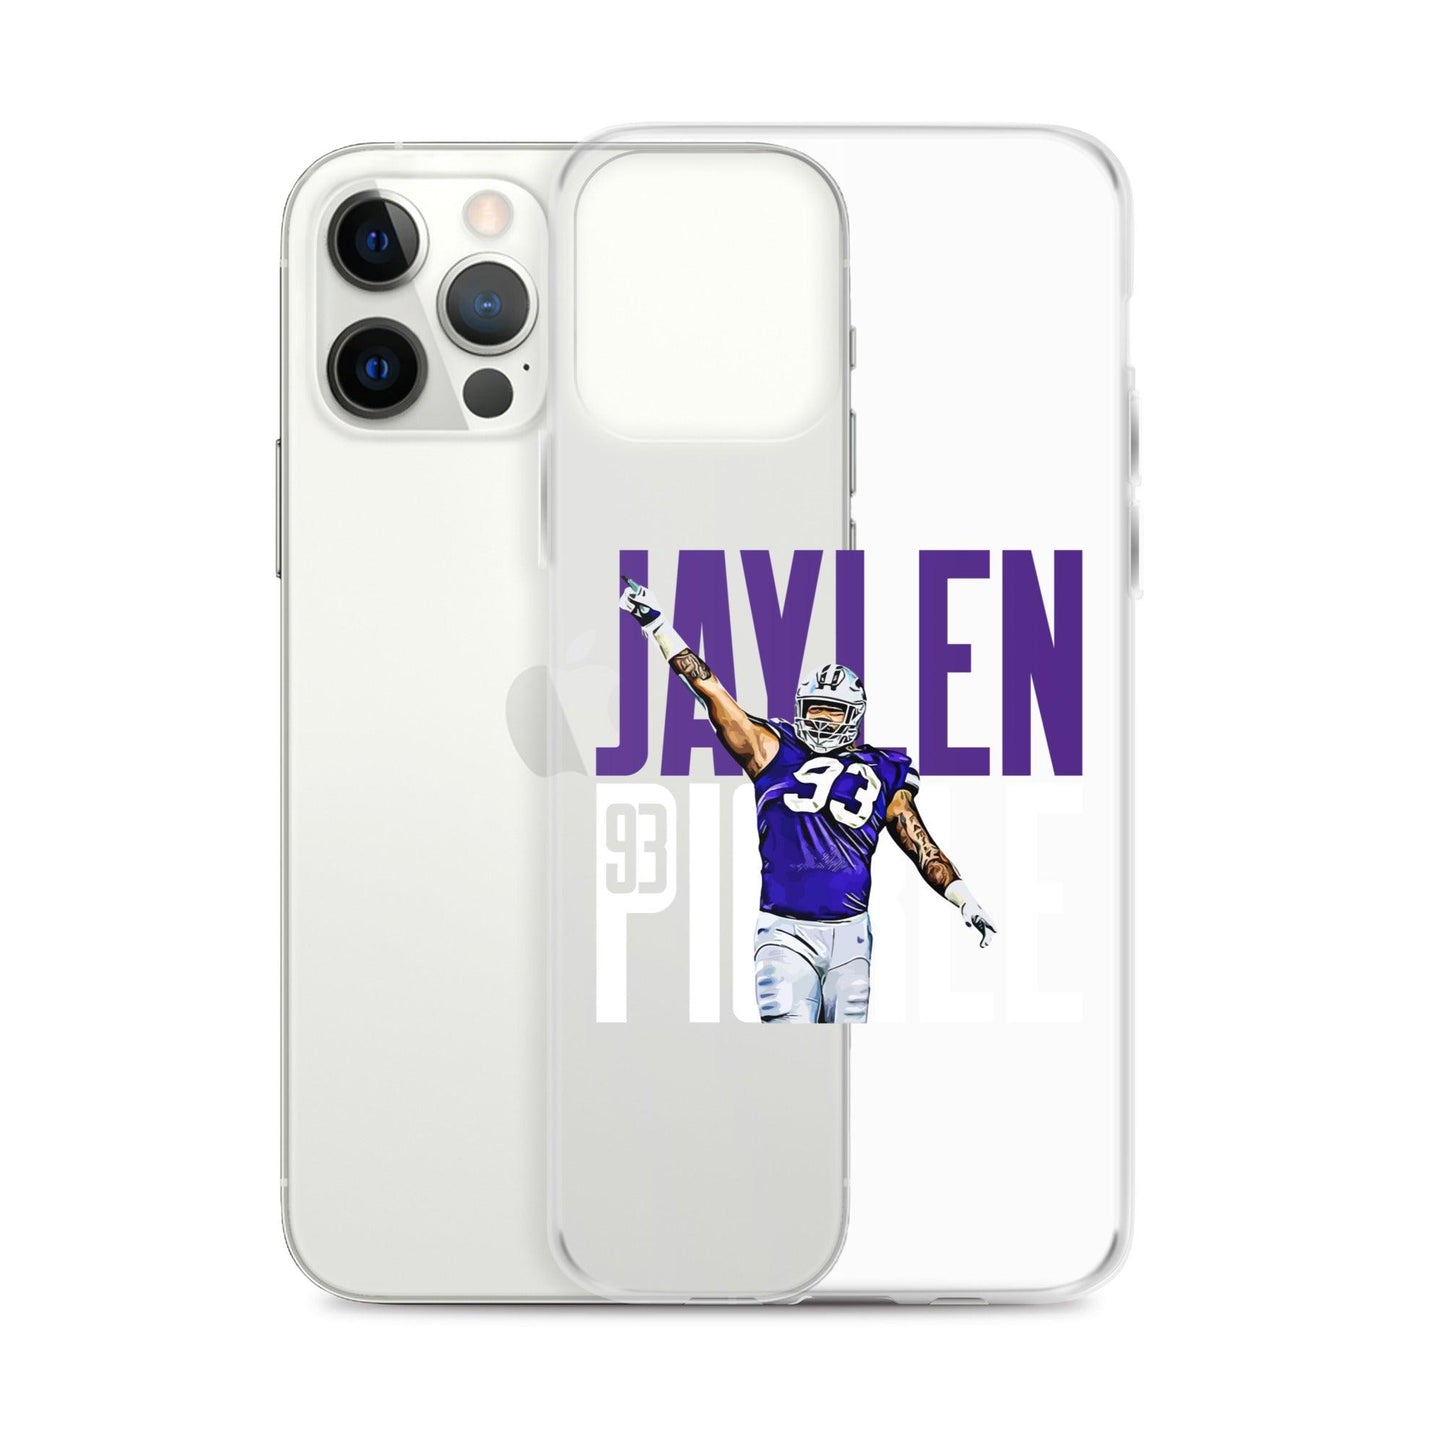 Jaylen Pickle "Gameday" iPhone Case - Fan Arch